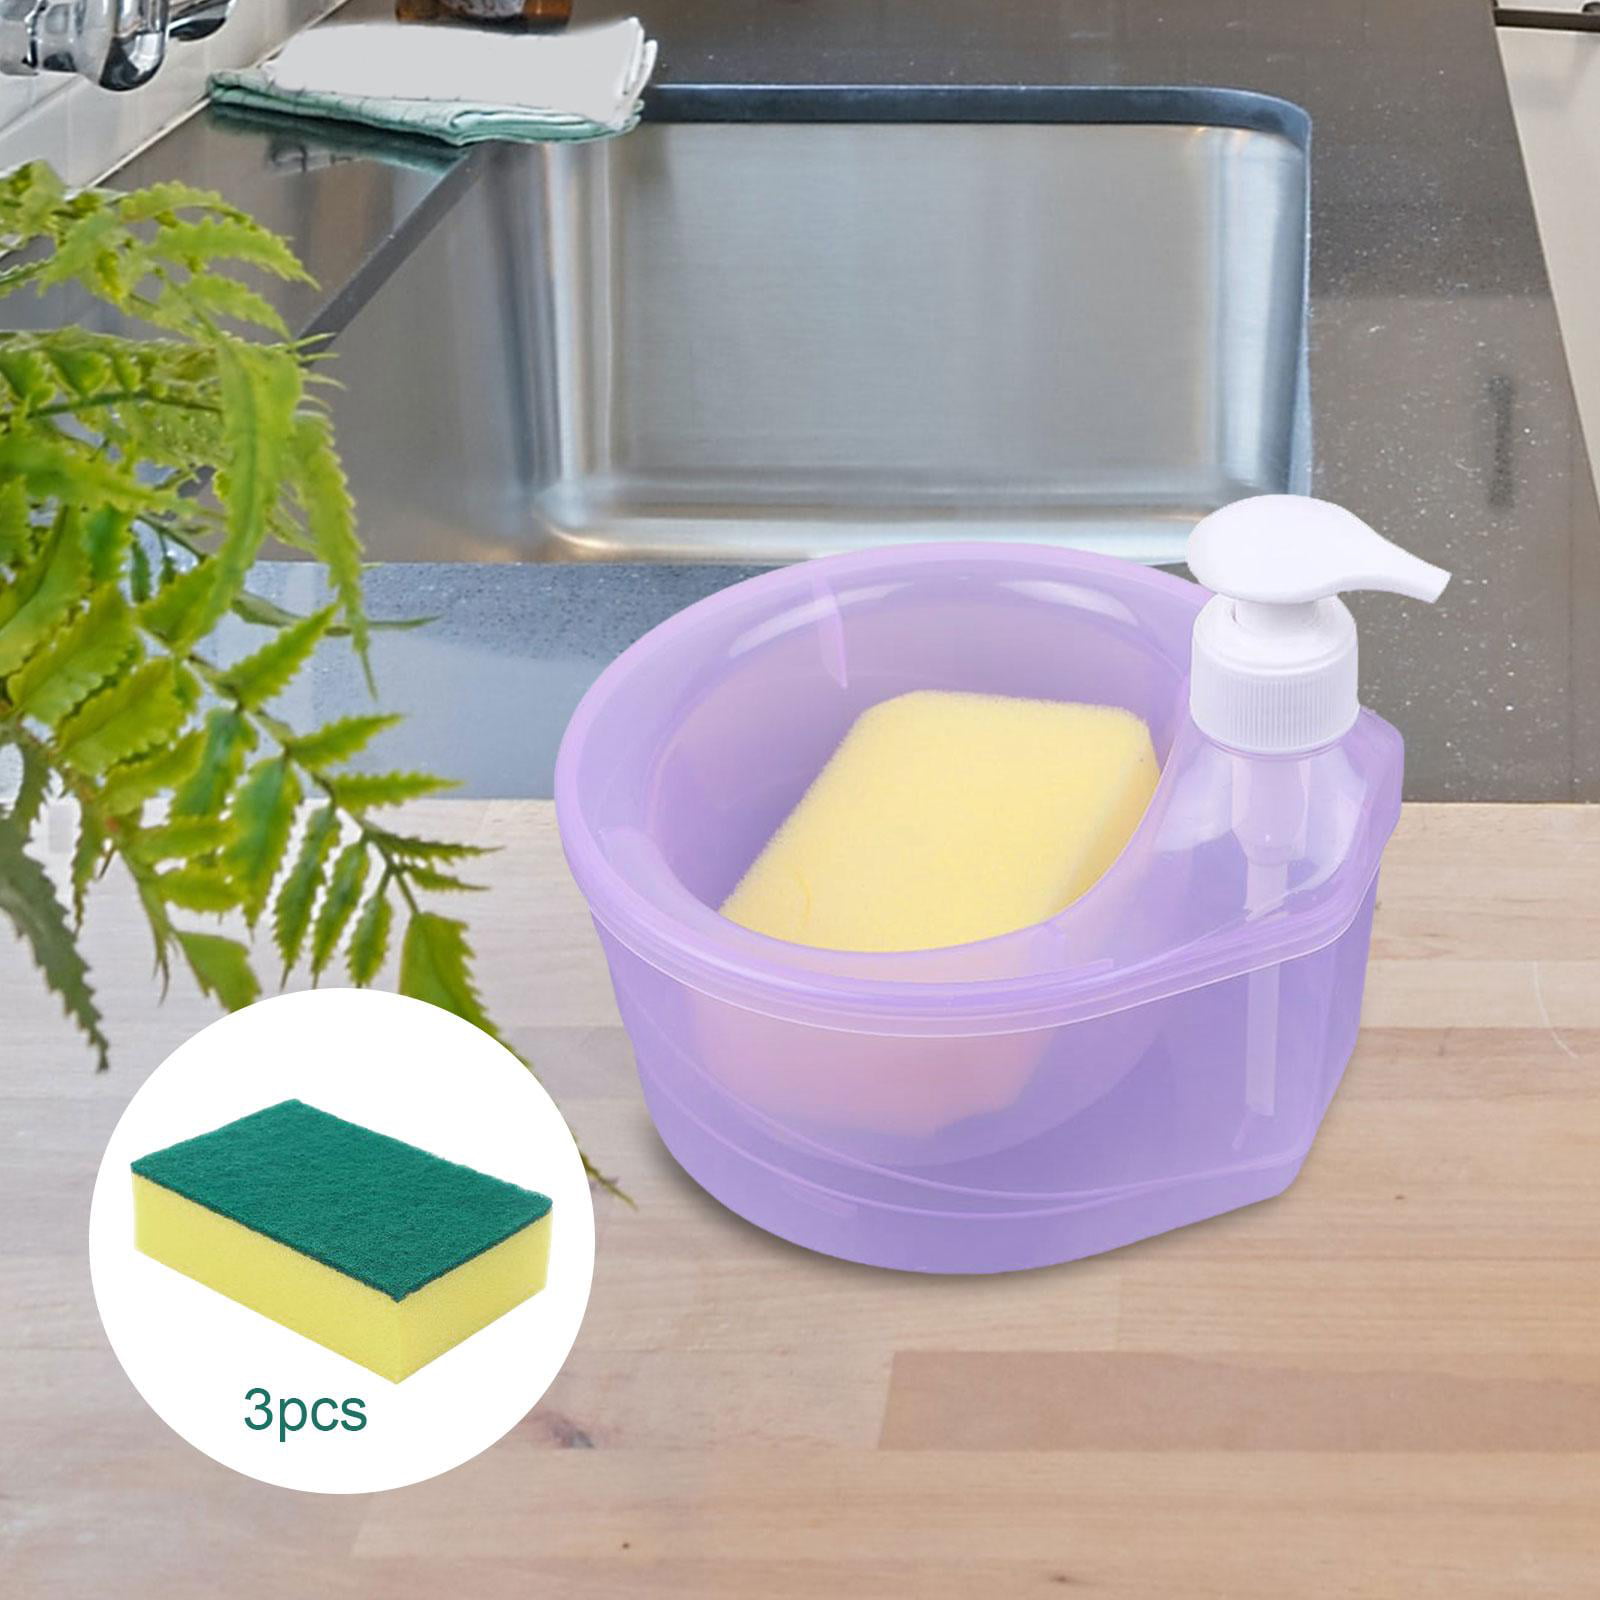 Leakproof 2-in-1 Soap Dispenser Sponge Holder for Kitchen – Aukow